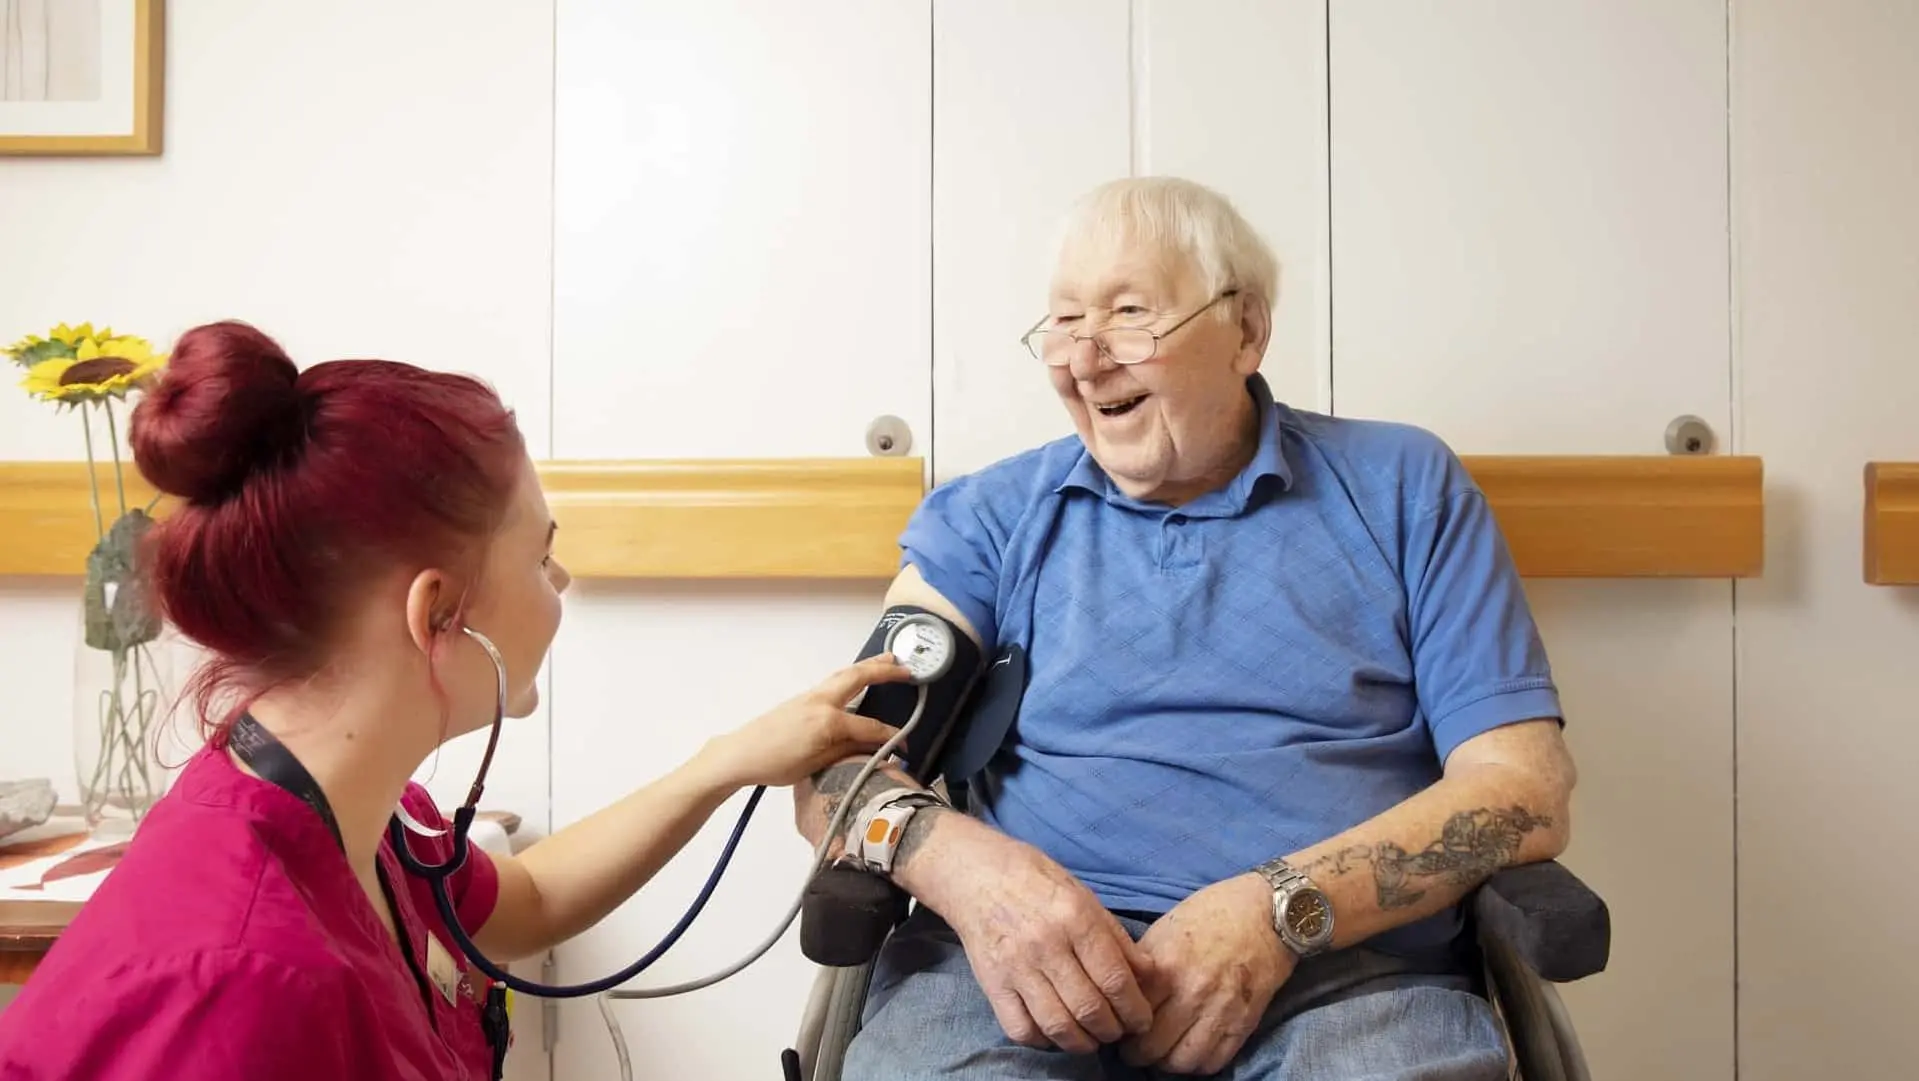 Kvinna med stetoskop använder stetoskop på armen på en glad man i rullstol.